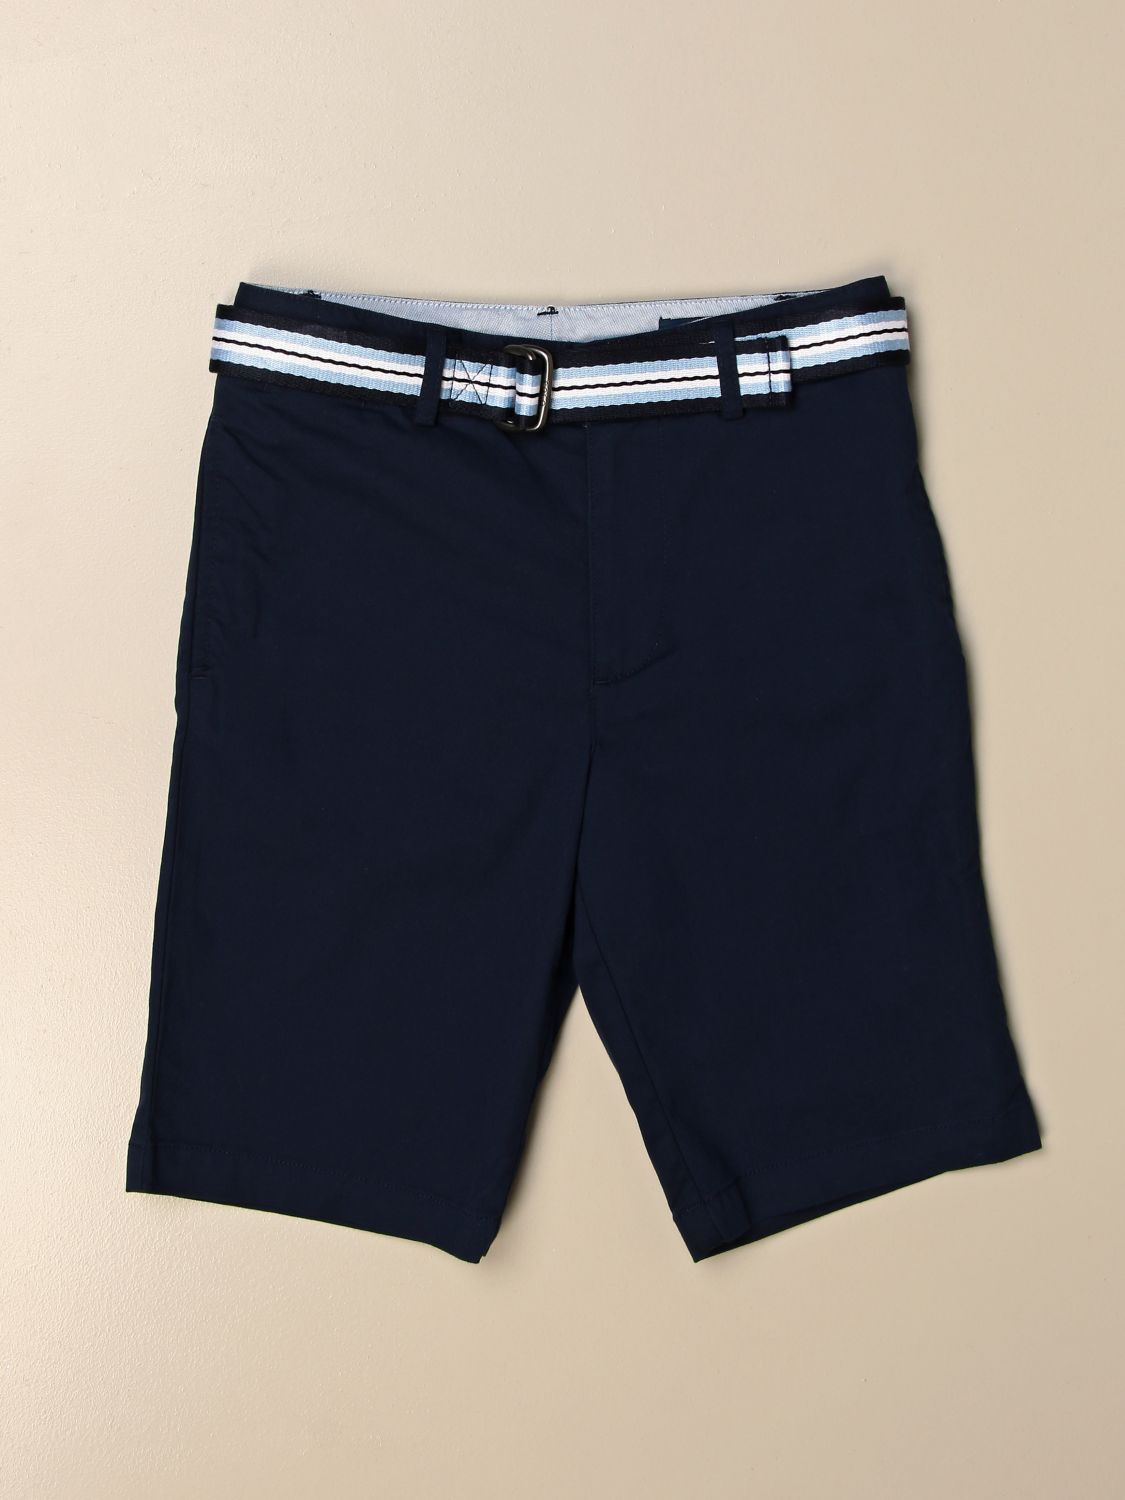 Shorts Polo Ralph Lauren Boy: Shorts kinder Polo Ralph Lauren Boy blau 1